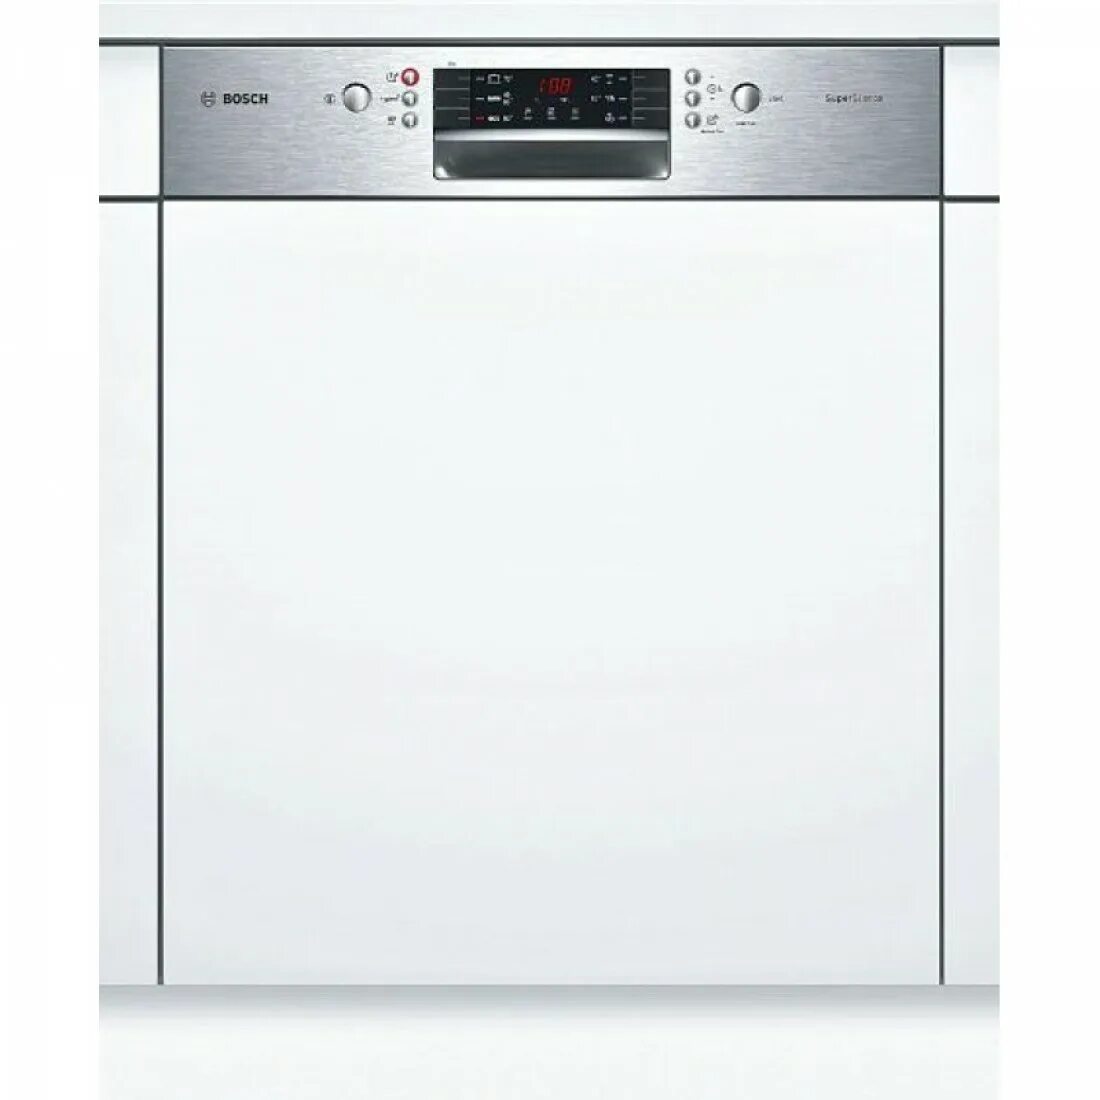 Посудомойка bosch купить. Посудомоечная машина Siemens SN 536s01 ke. Bosch SMI 46ks00 t. Посудомоечная машина Bosch 60 встраиваемая. Посудомоечная машина Bosch spi46ms01e.